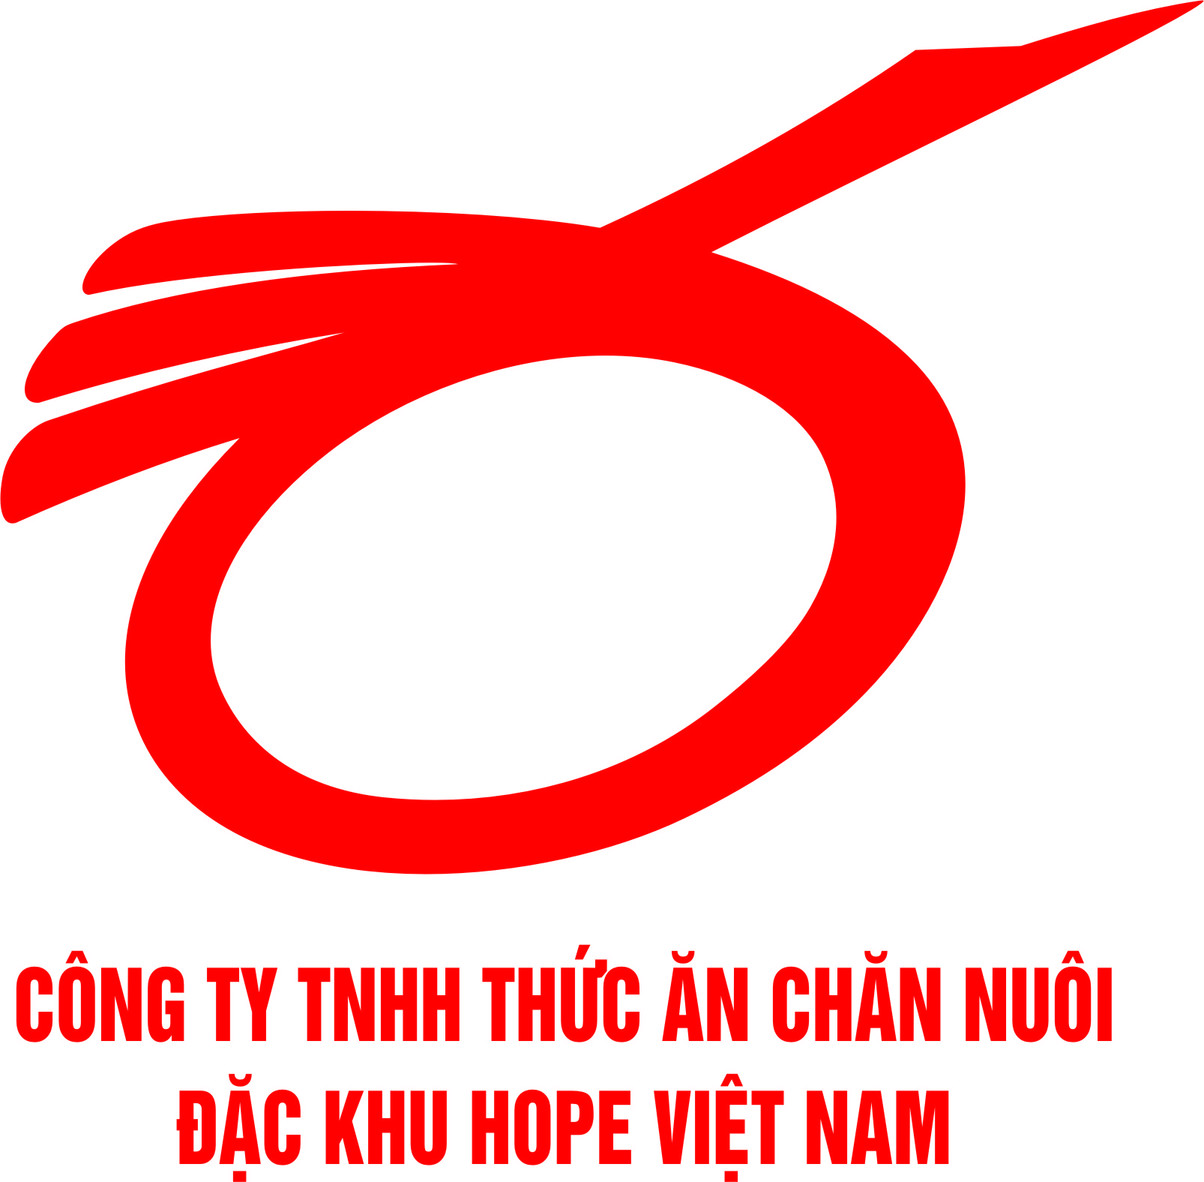 Hóa đơn GTGT của Công ty TNHH thức ăn chăn nuôi đặc khu Hope Việt Nam